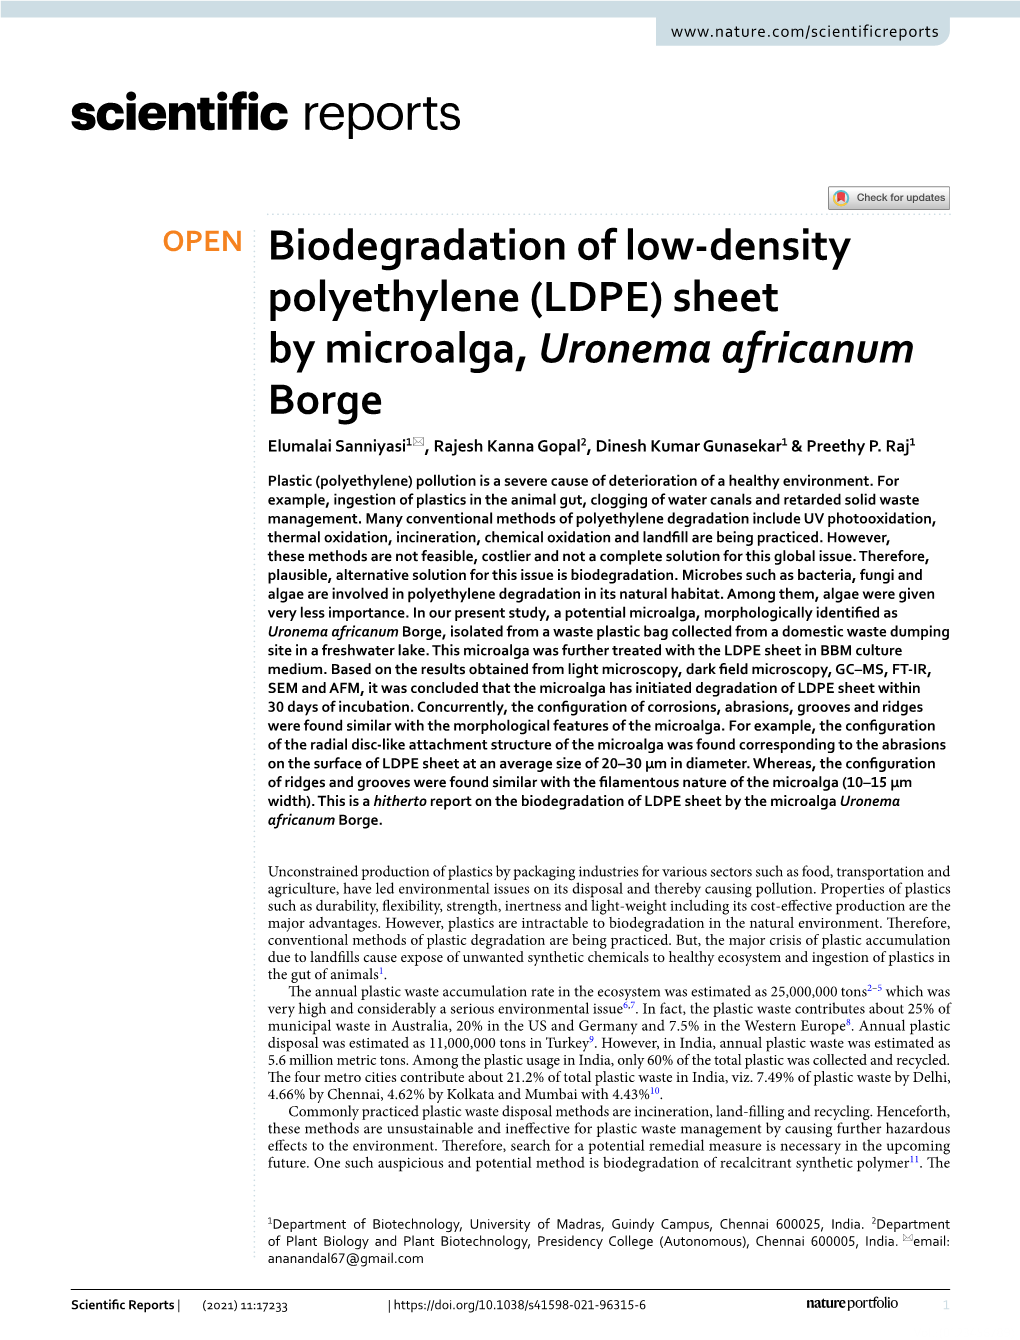 (LDPE) Sheet by Microalga, Uronema Africanum Borge Elumalai Sanniyasi1*, Rajesh Kanna Gopal2, Dinesh Kumar Gunasekar1 & Preethy P